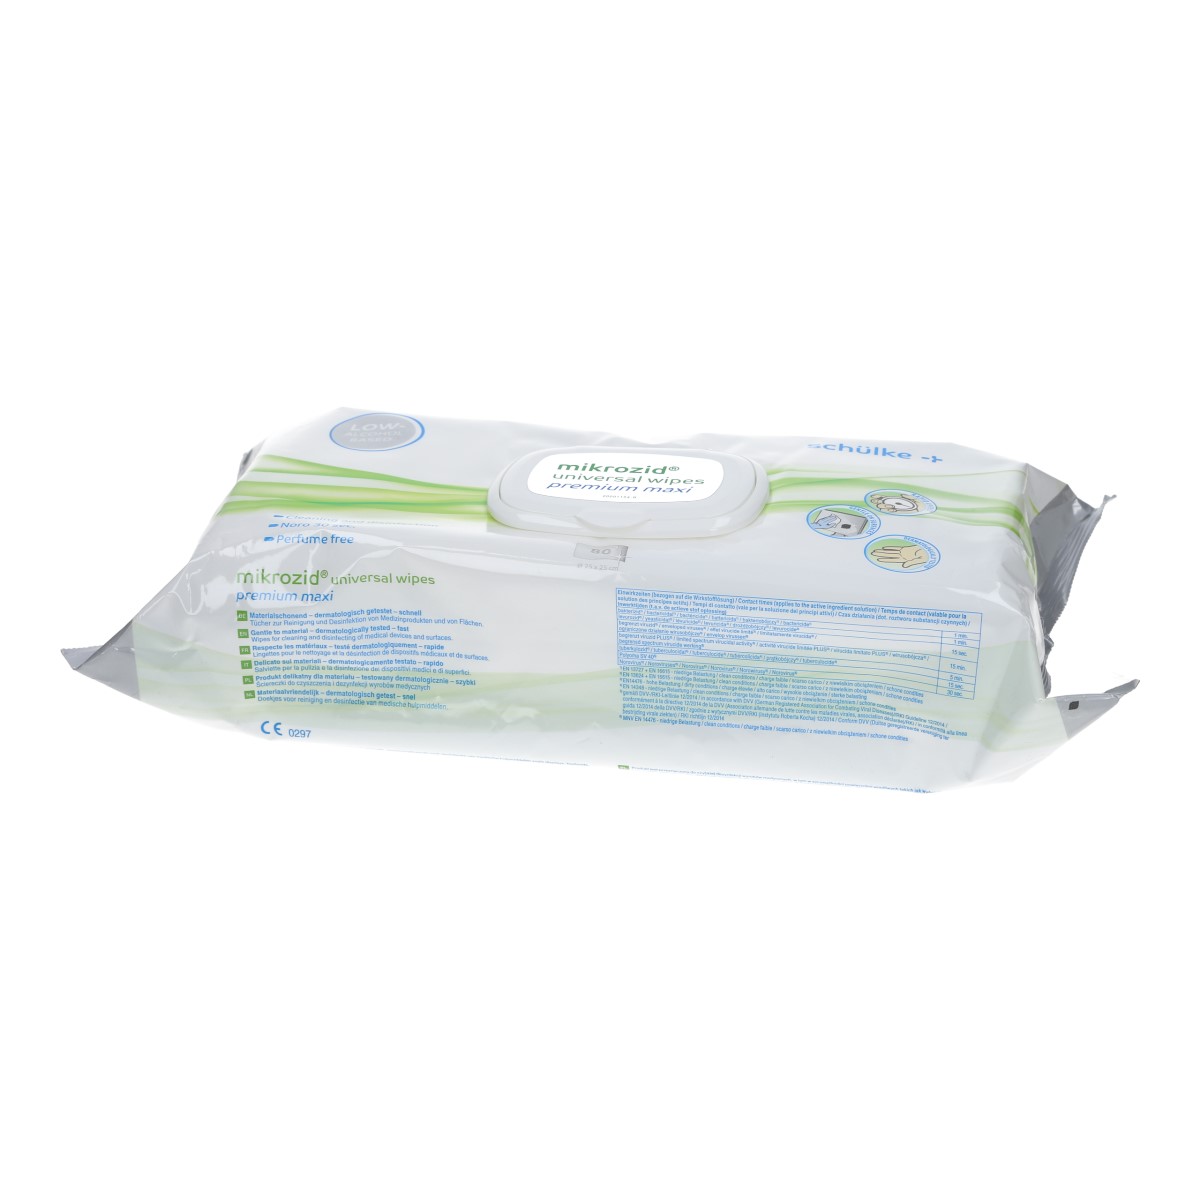 Schülke Mikrozid universal wipes premium Maxi-Softpack 80 Tücher Flächendesinfektion Desinfektionstücher